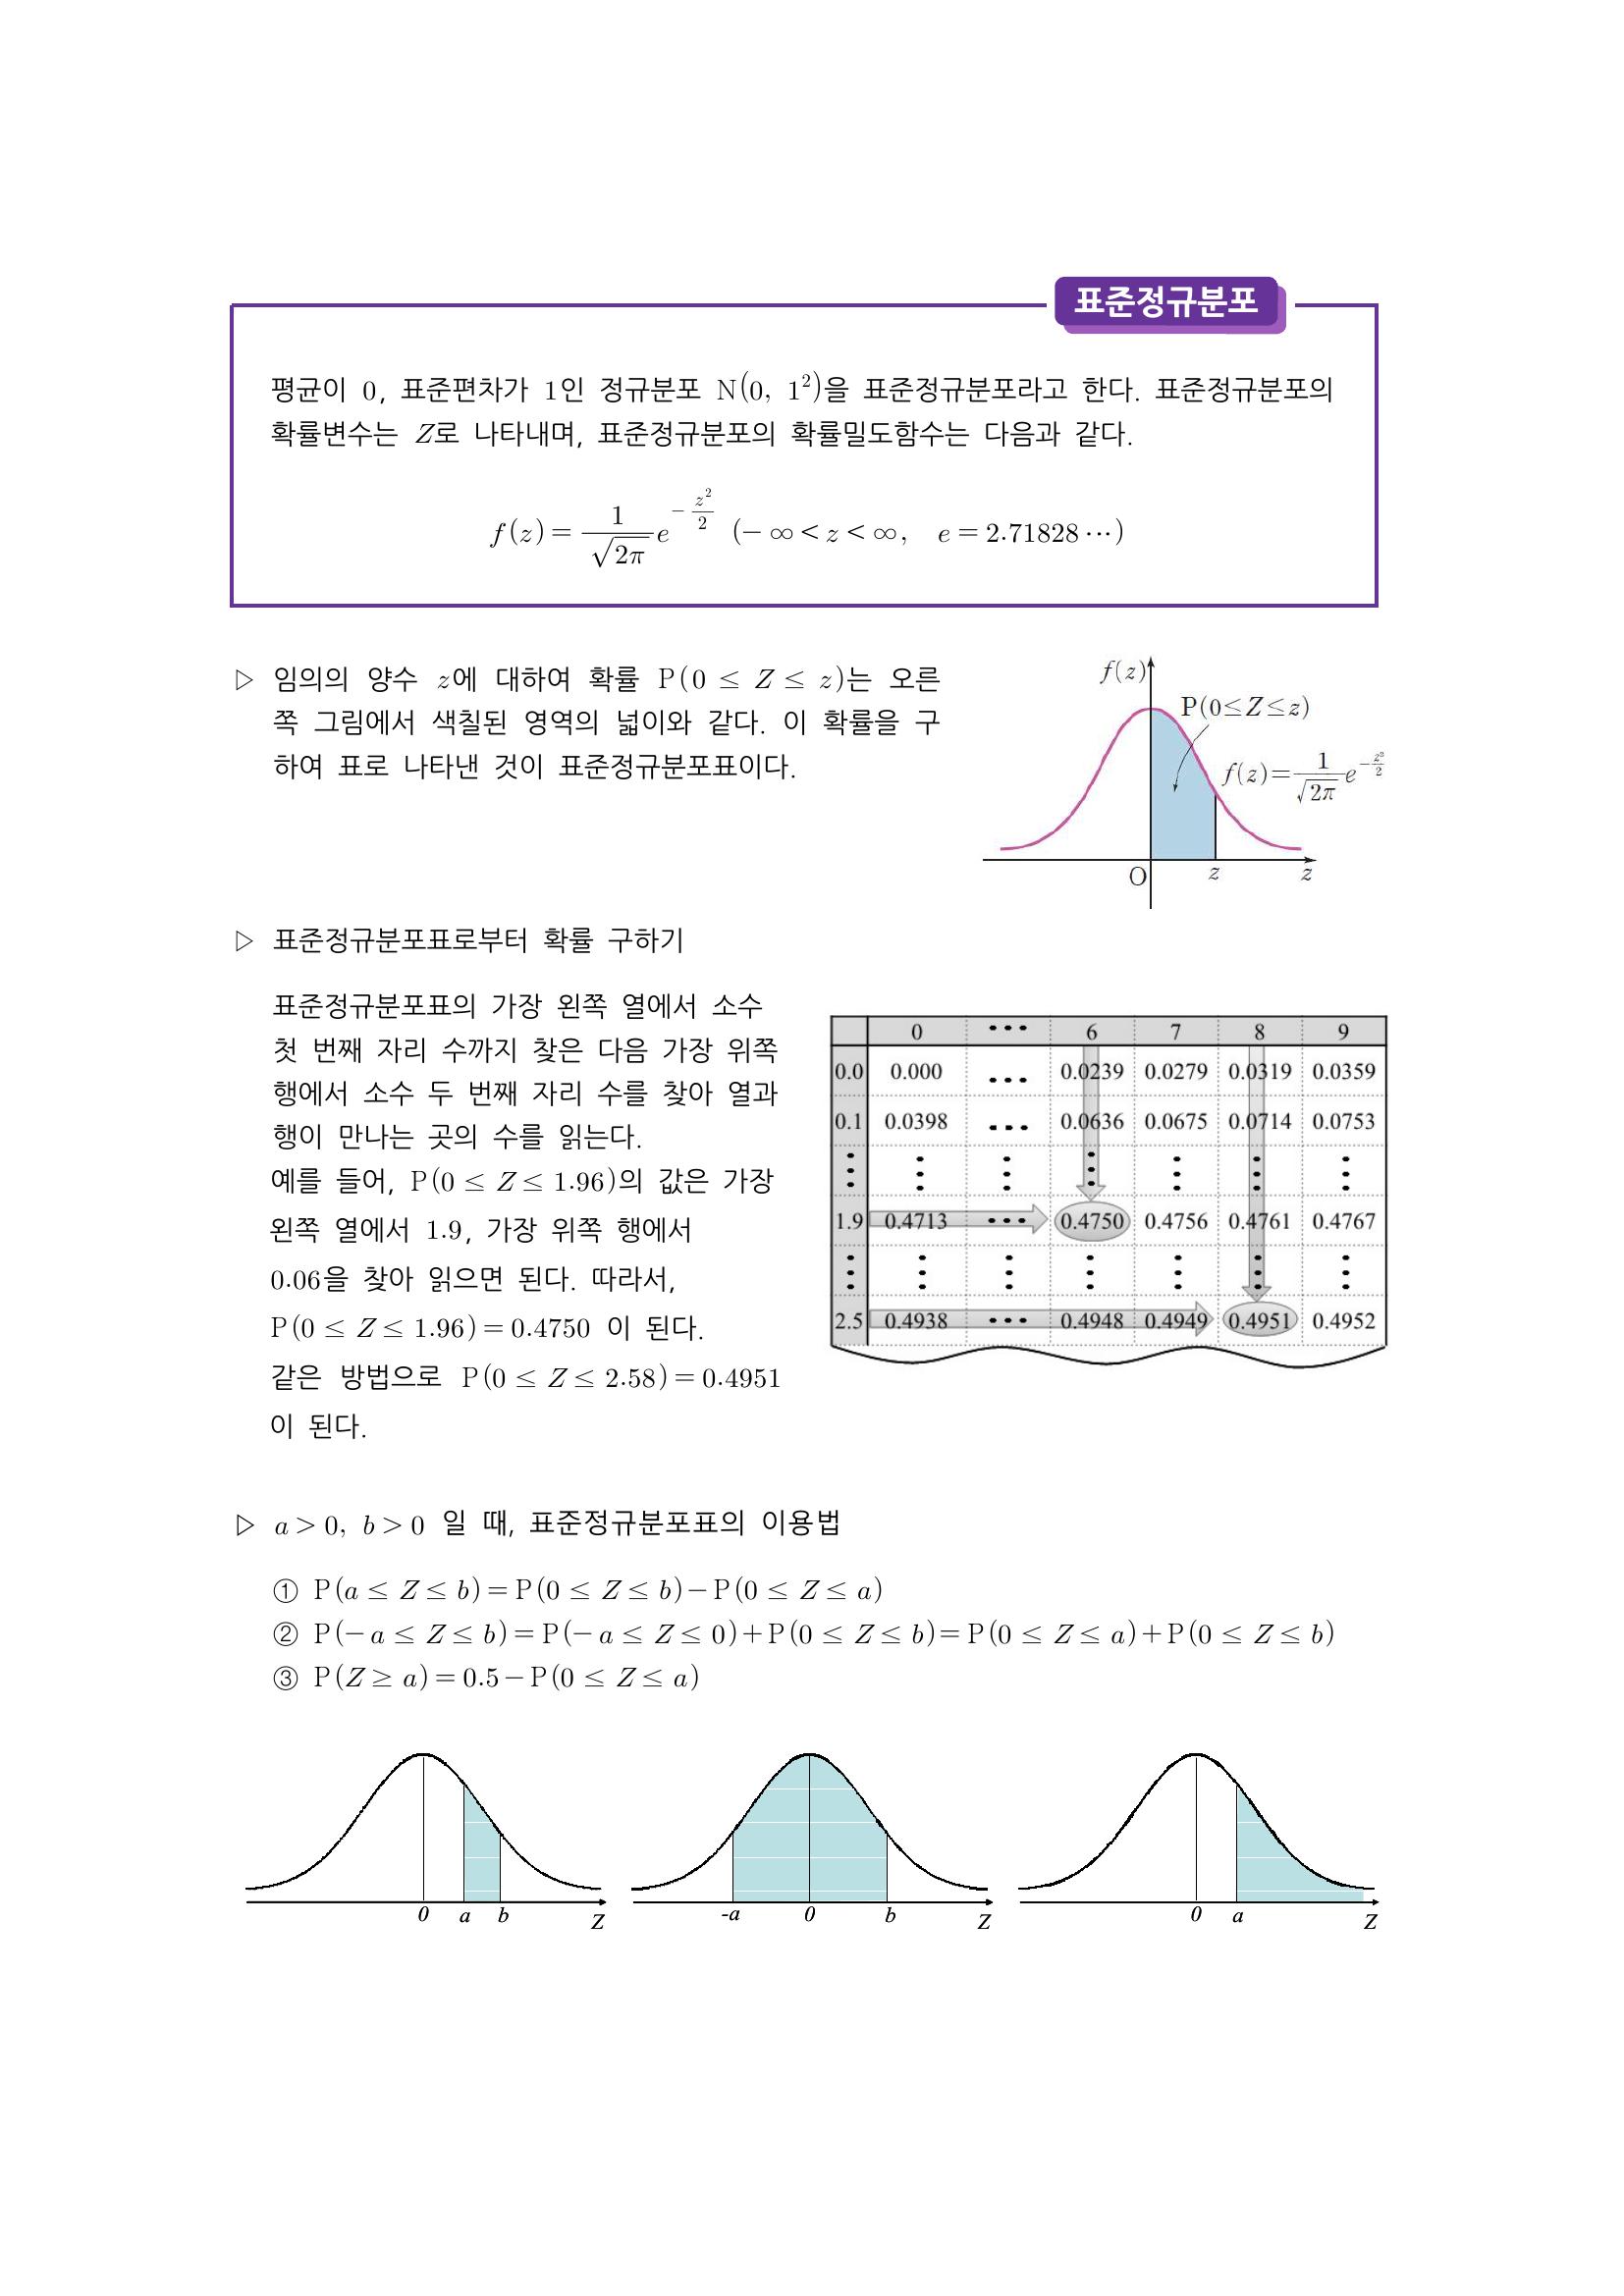 수학 개념 정리/공식 : 정규분포, 정규분포 곡선의 성질, 표준정규분포, 정규분포의 표준화, 이항분포와 정규분포의 관계